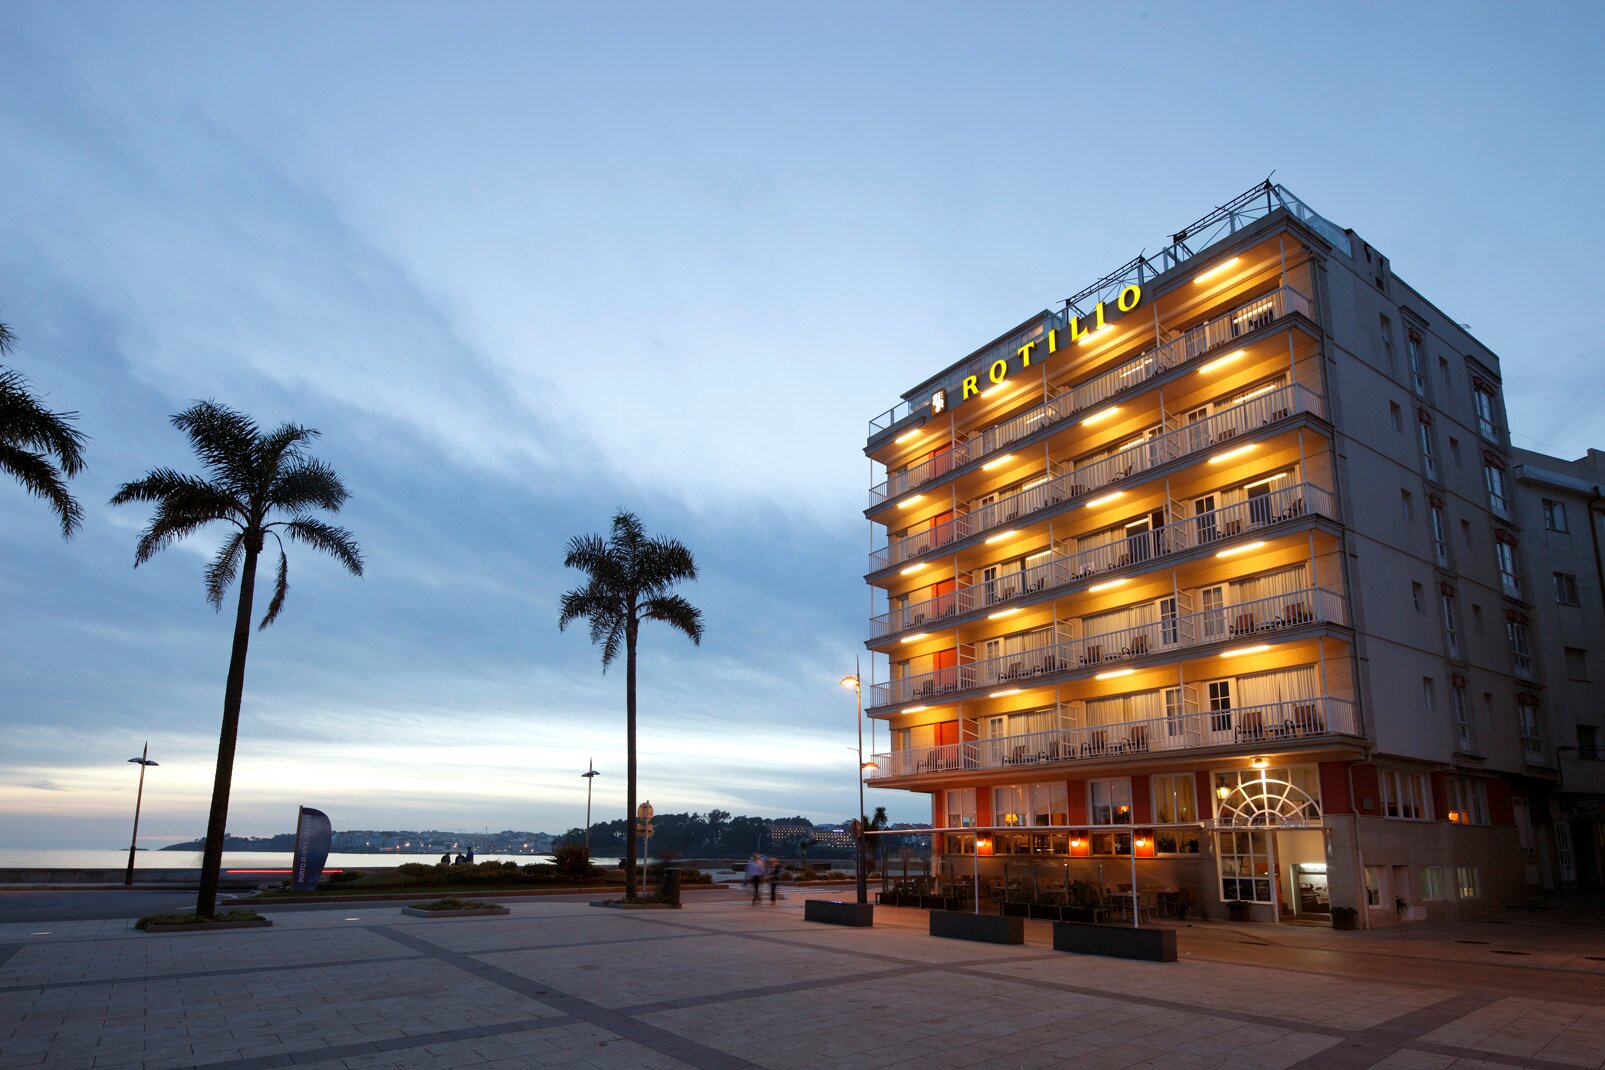 Apartamentos con excelentes vistas al mar, encanto y de trato familiar ubicado en pleno puerto deportivo de Sanxenxo (Galicia). También restaurante